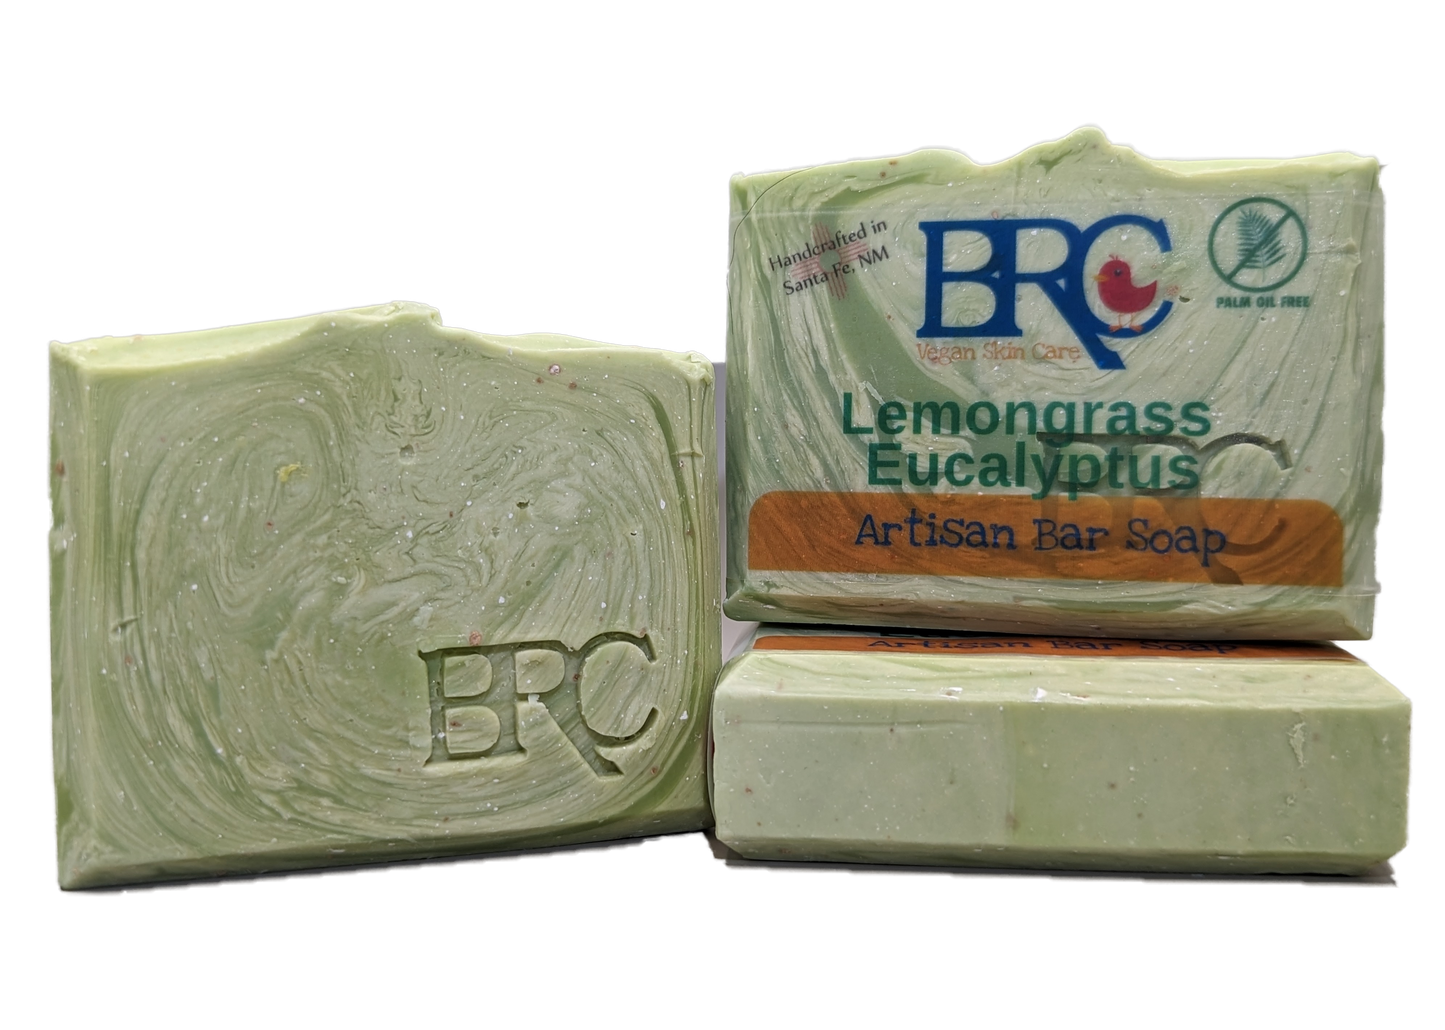 Lemongrass Eucalyptus Natural Artisan Bar Soap